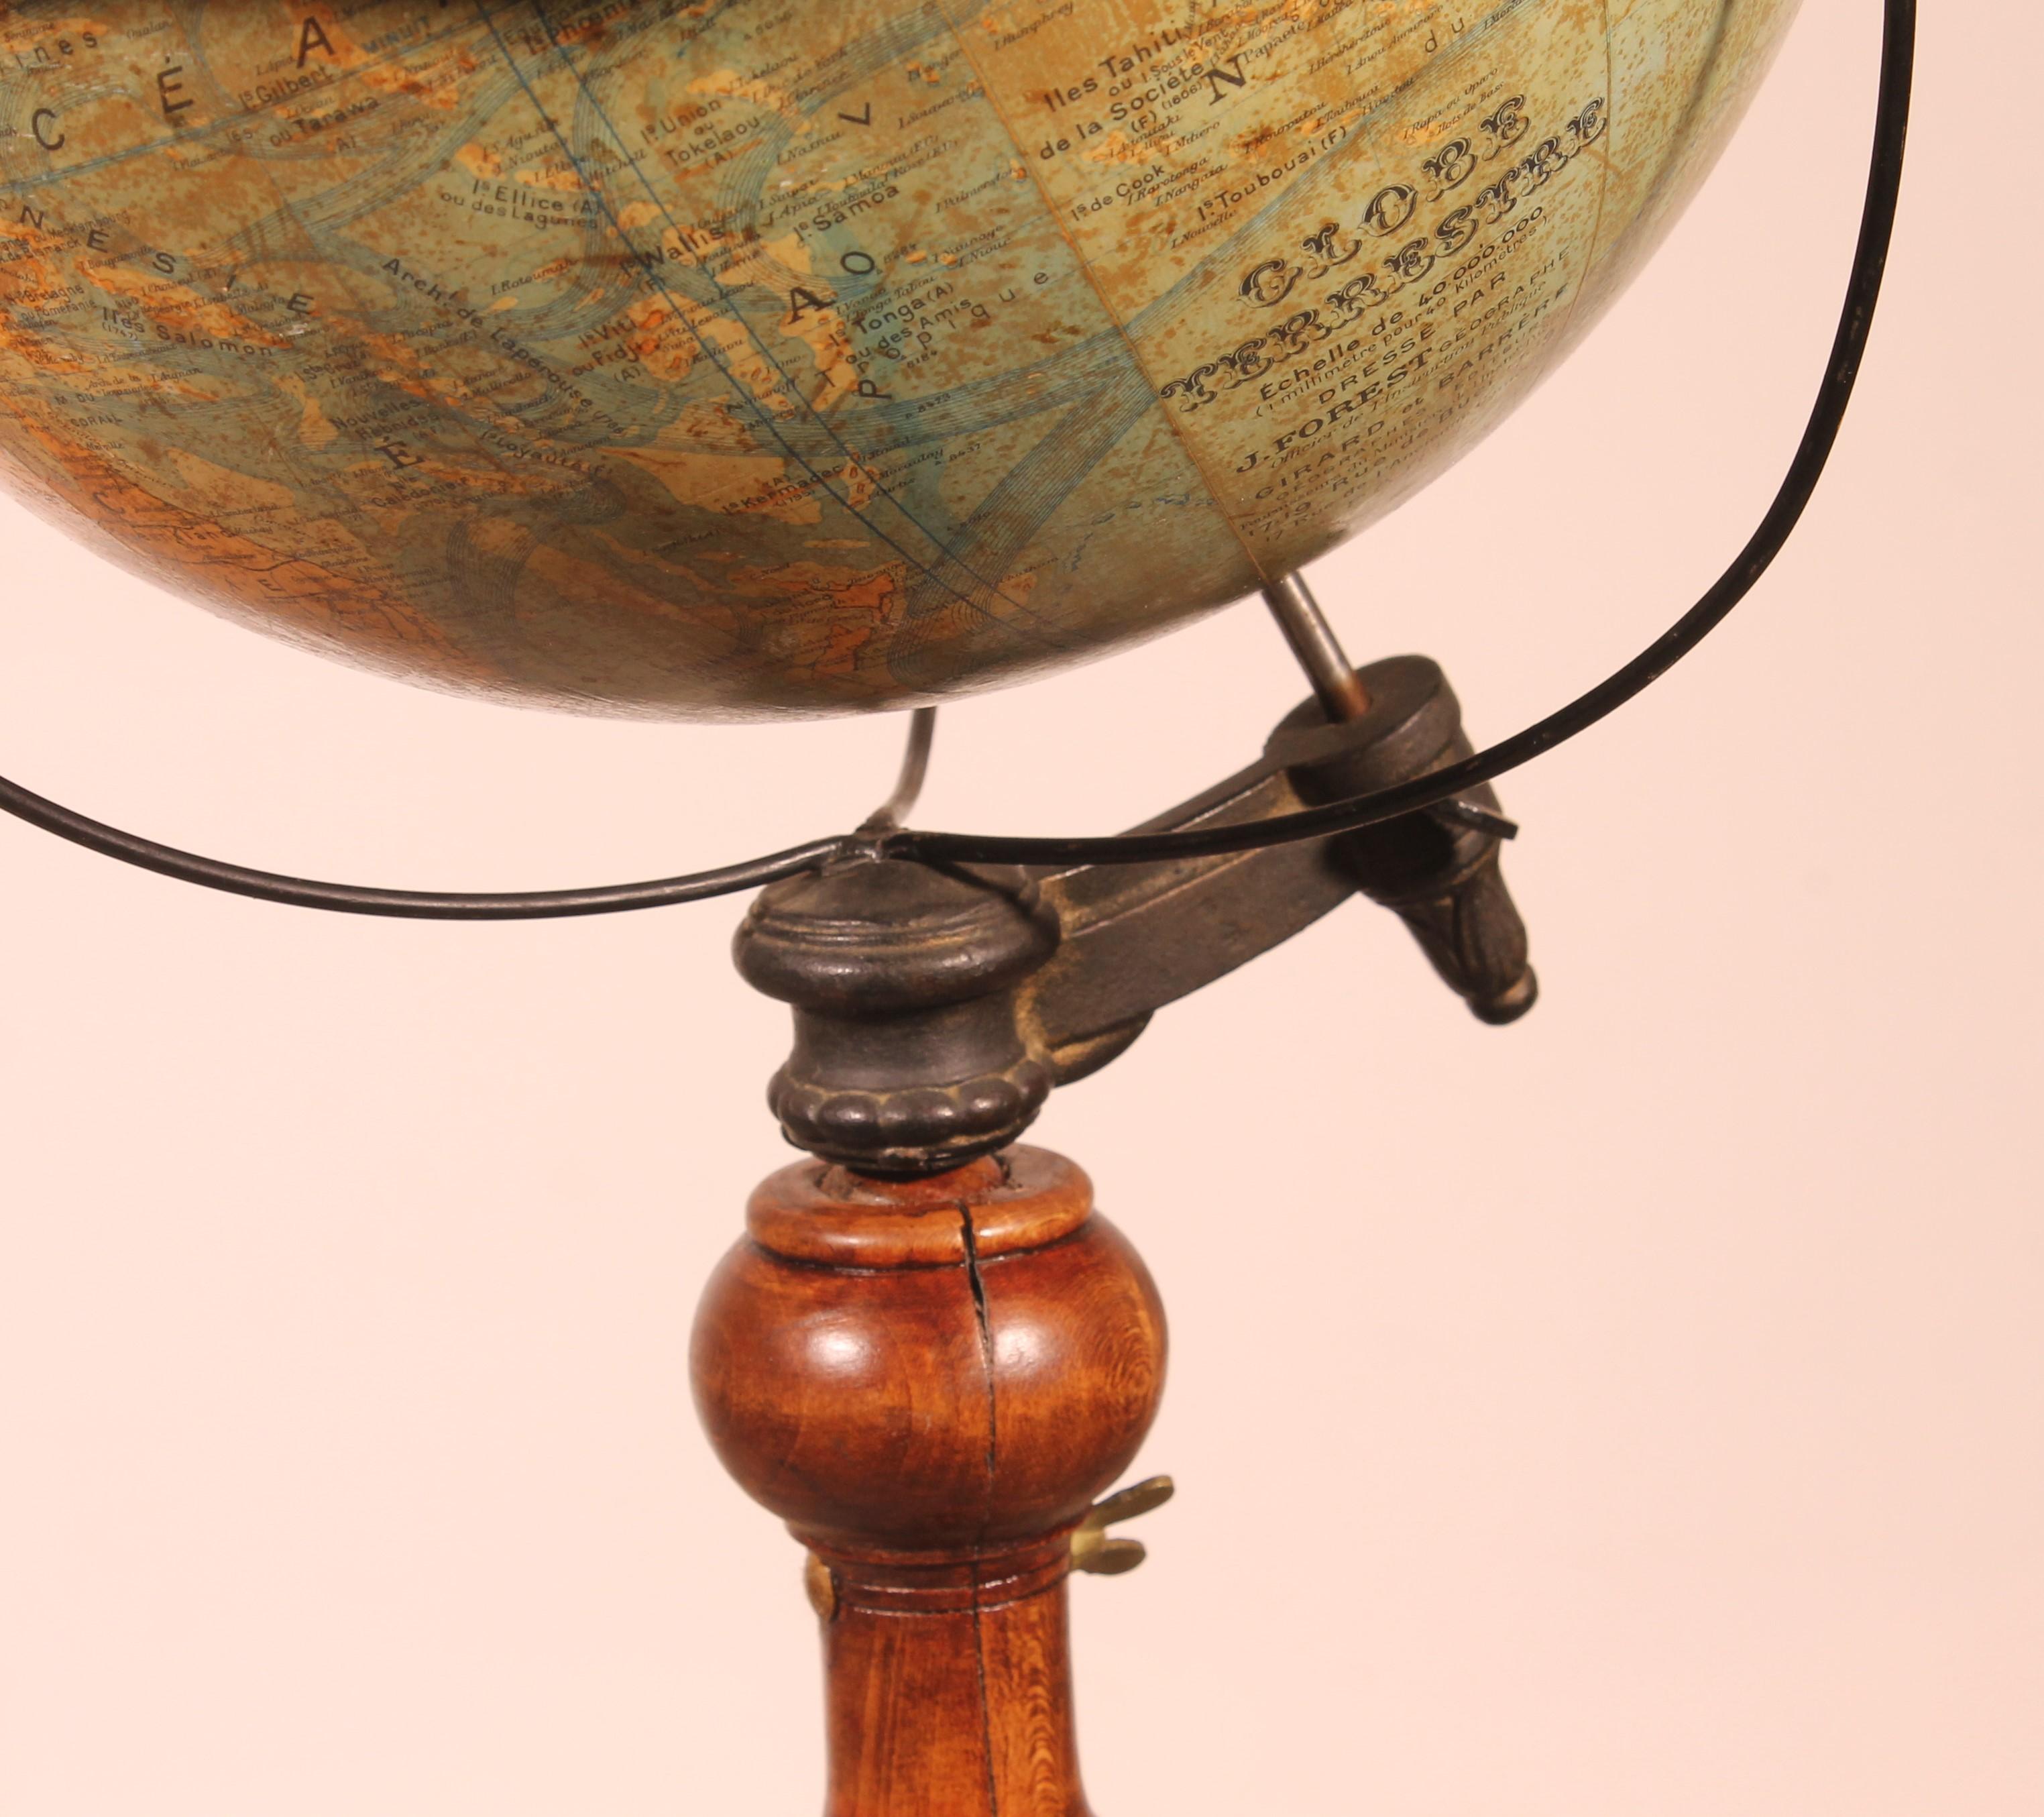 Très beau globe de bibliothèque réalisé par J.Forest Paris rue de Buci au 19ème siècle

Les globes sur pied sont les plus rares. Celui-ci, fabriqué par J. Forest, une célèbre maison d'édition parisienne du XIXe siècle, possède une très belle base